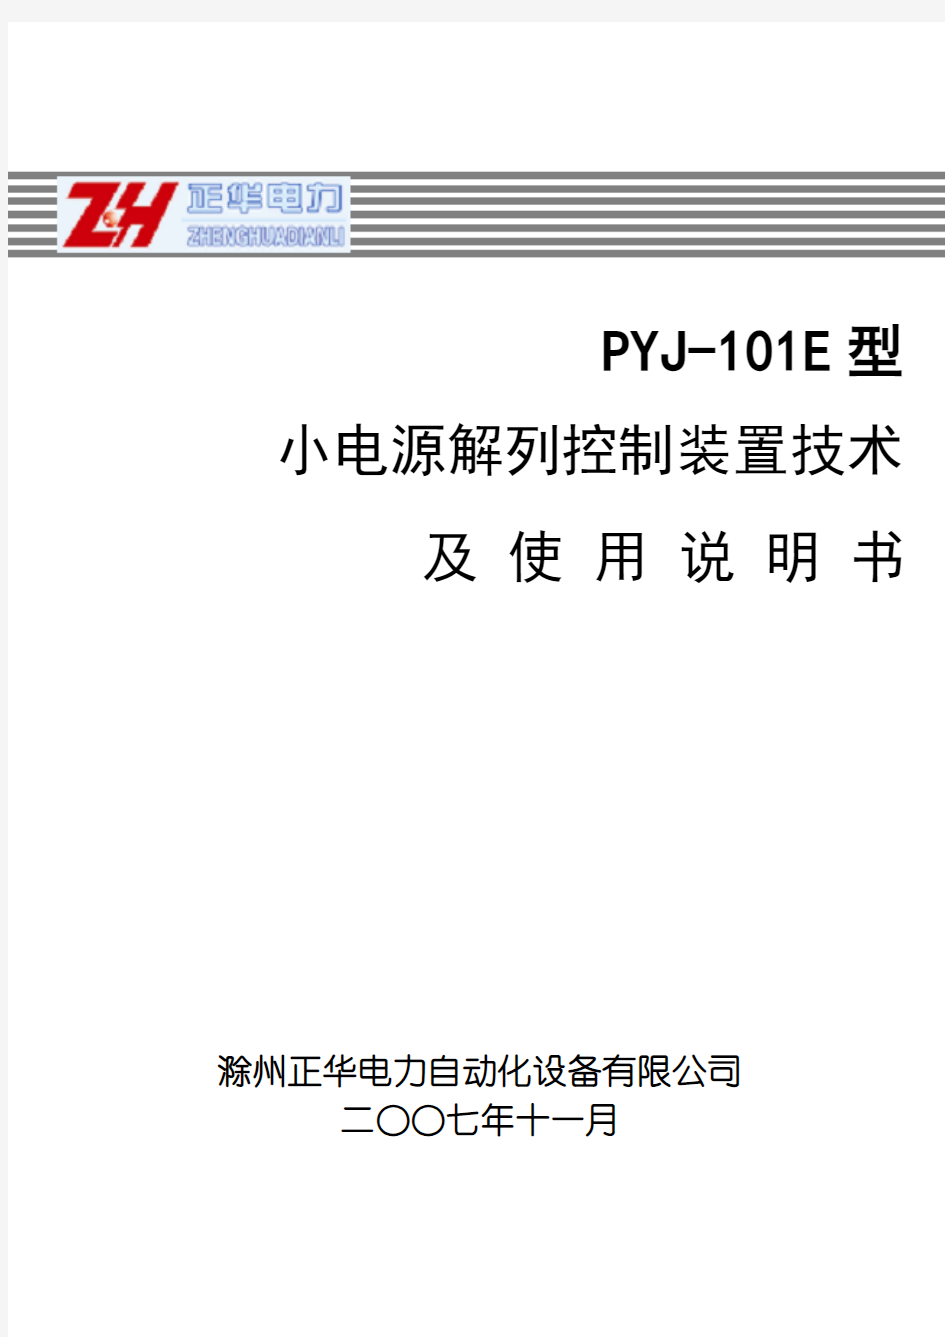 PYJ-101E小电源解列说明书